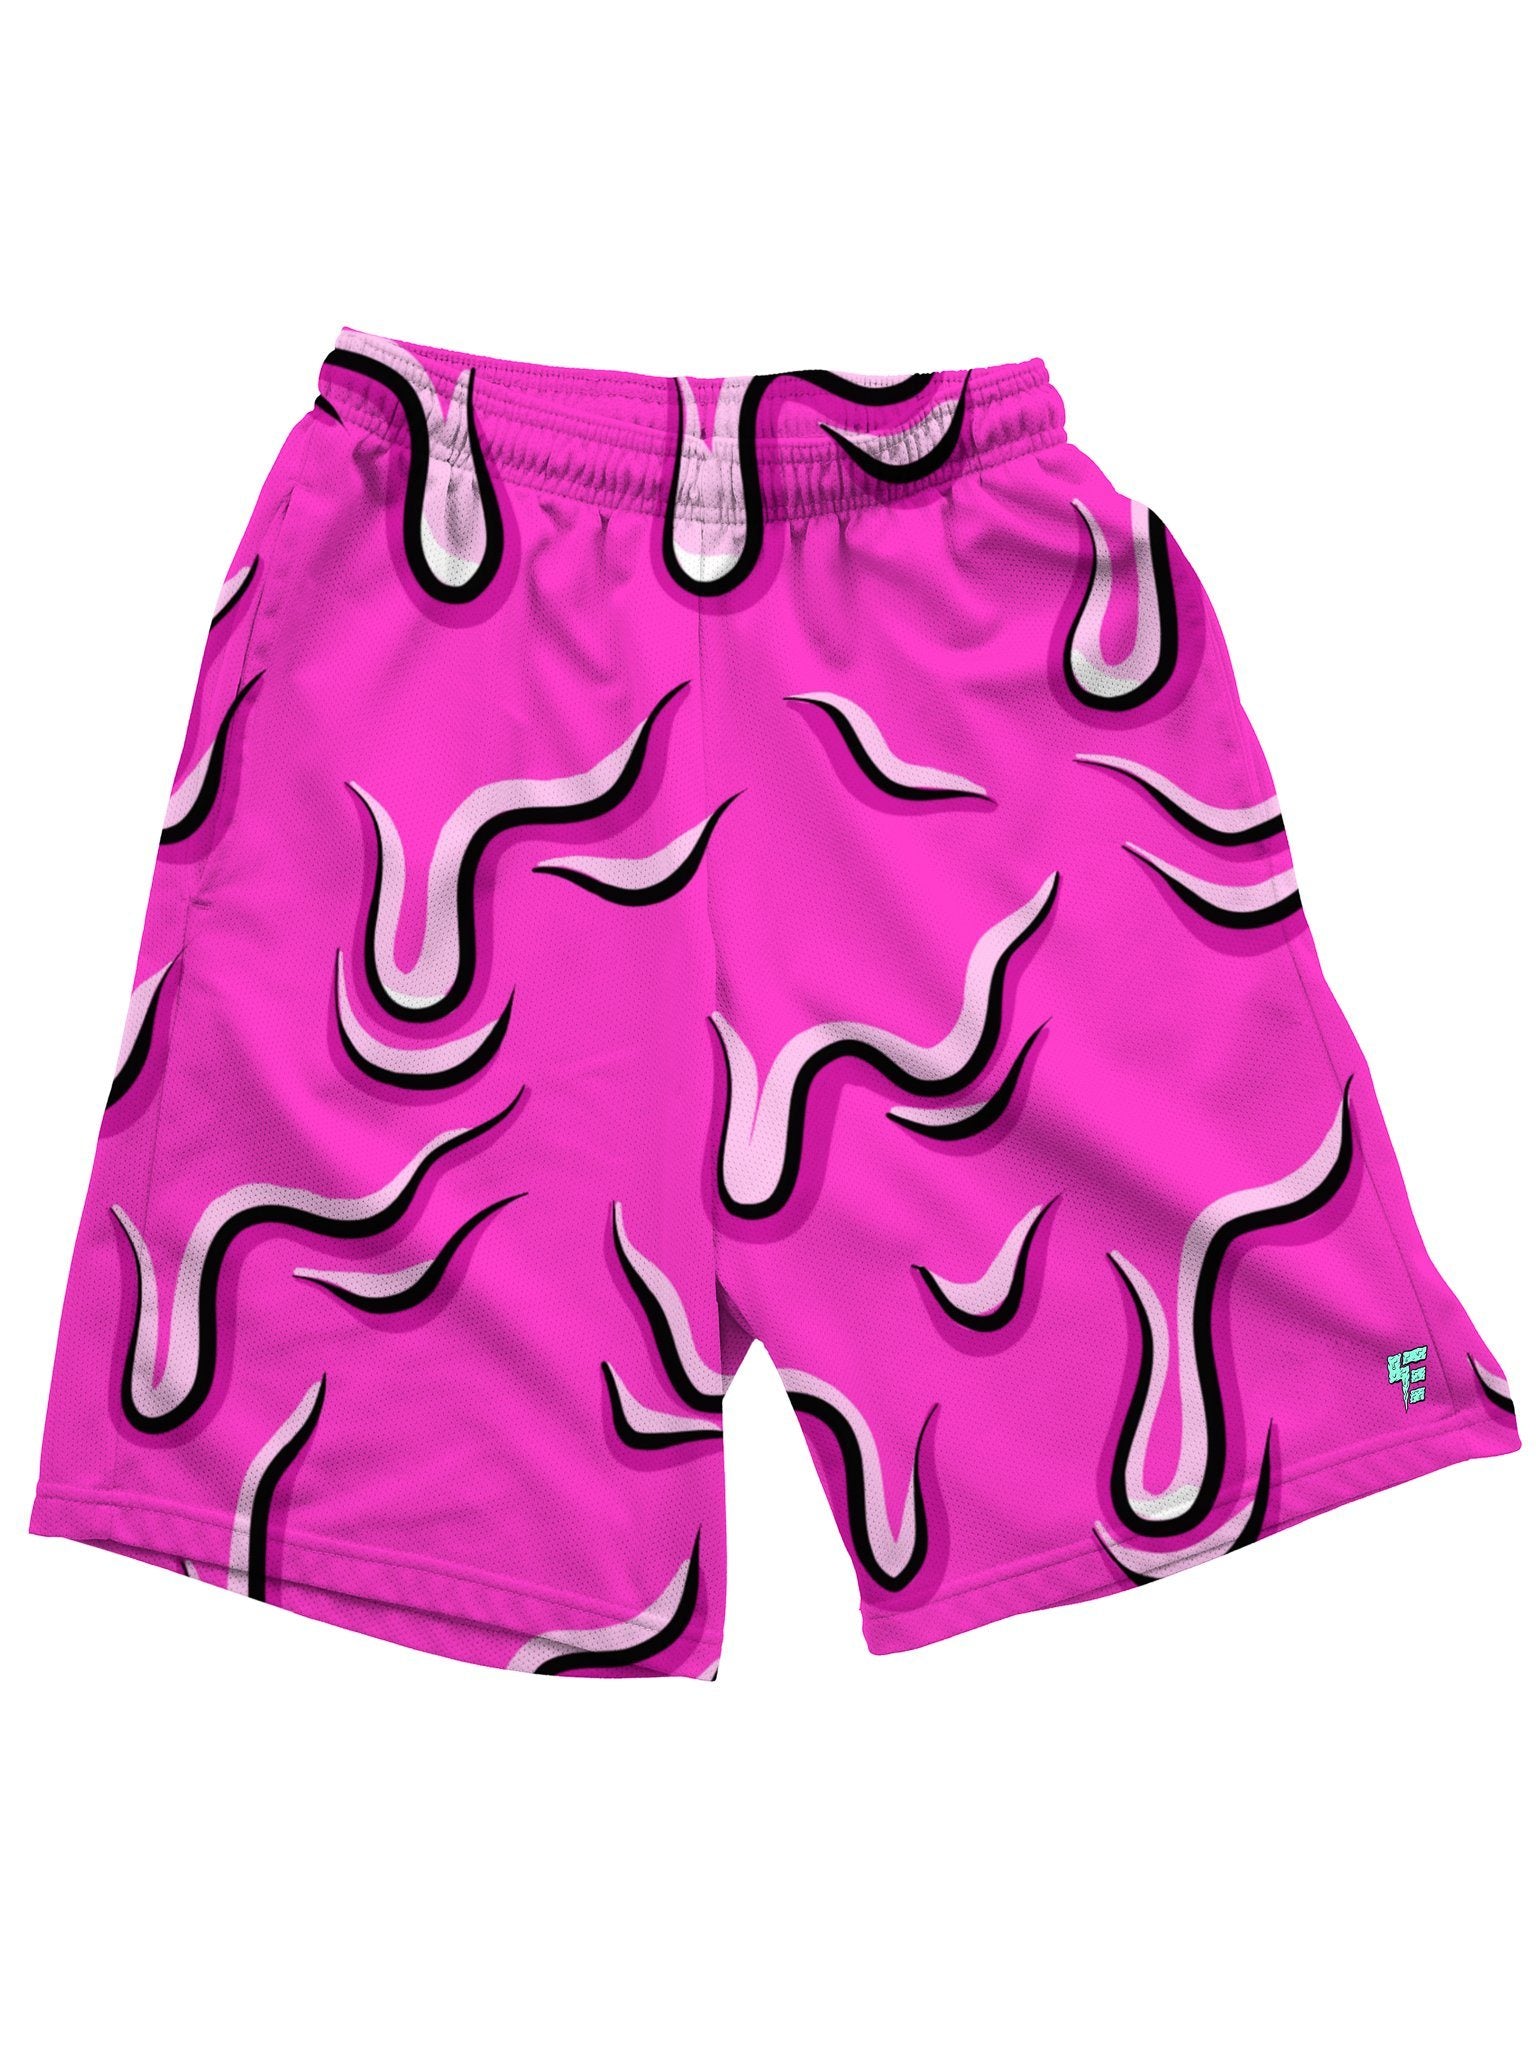 neon pink mens shorts